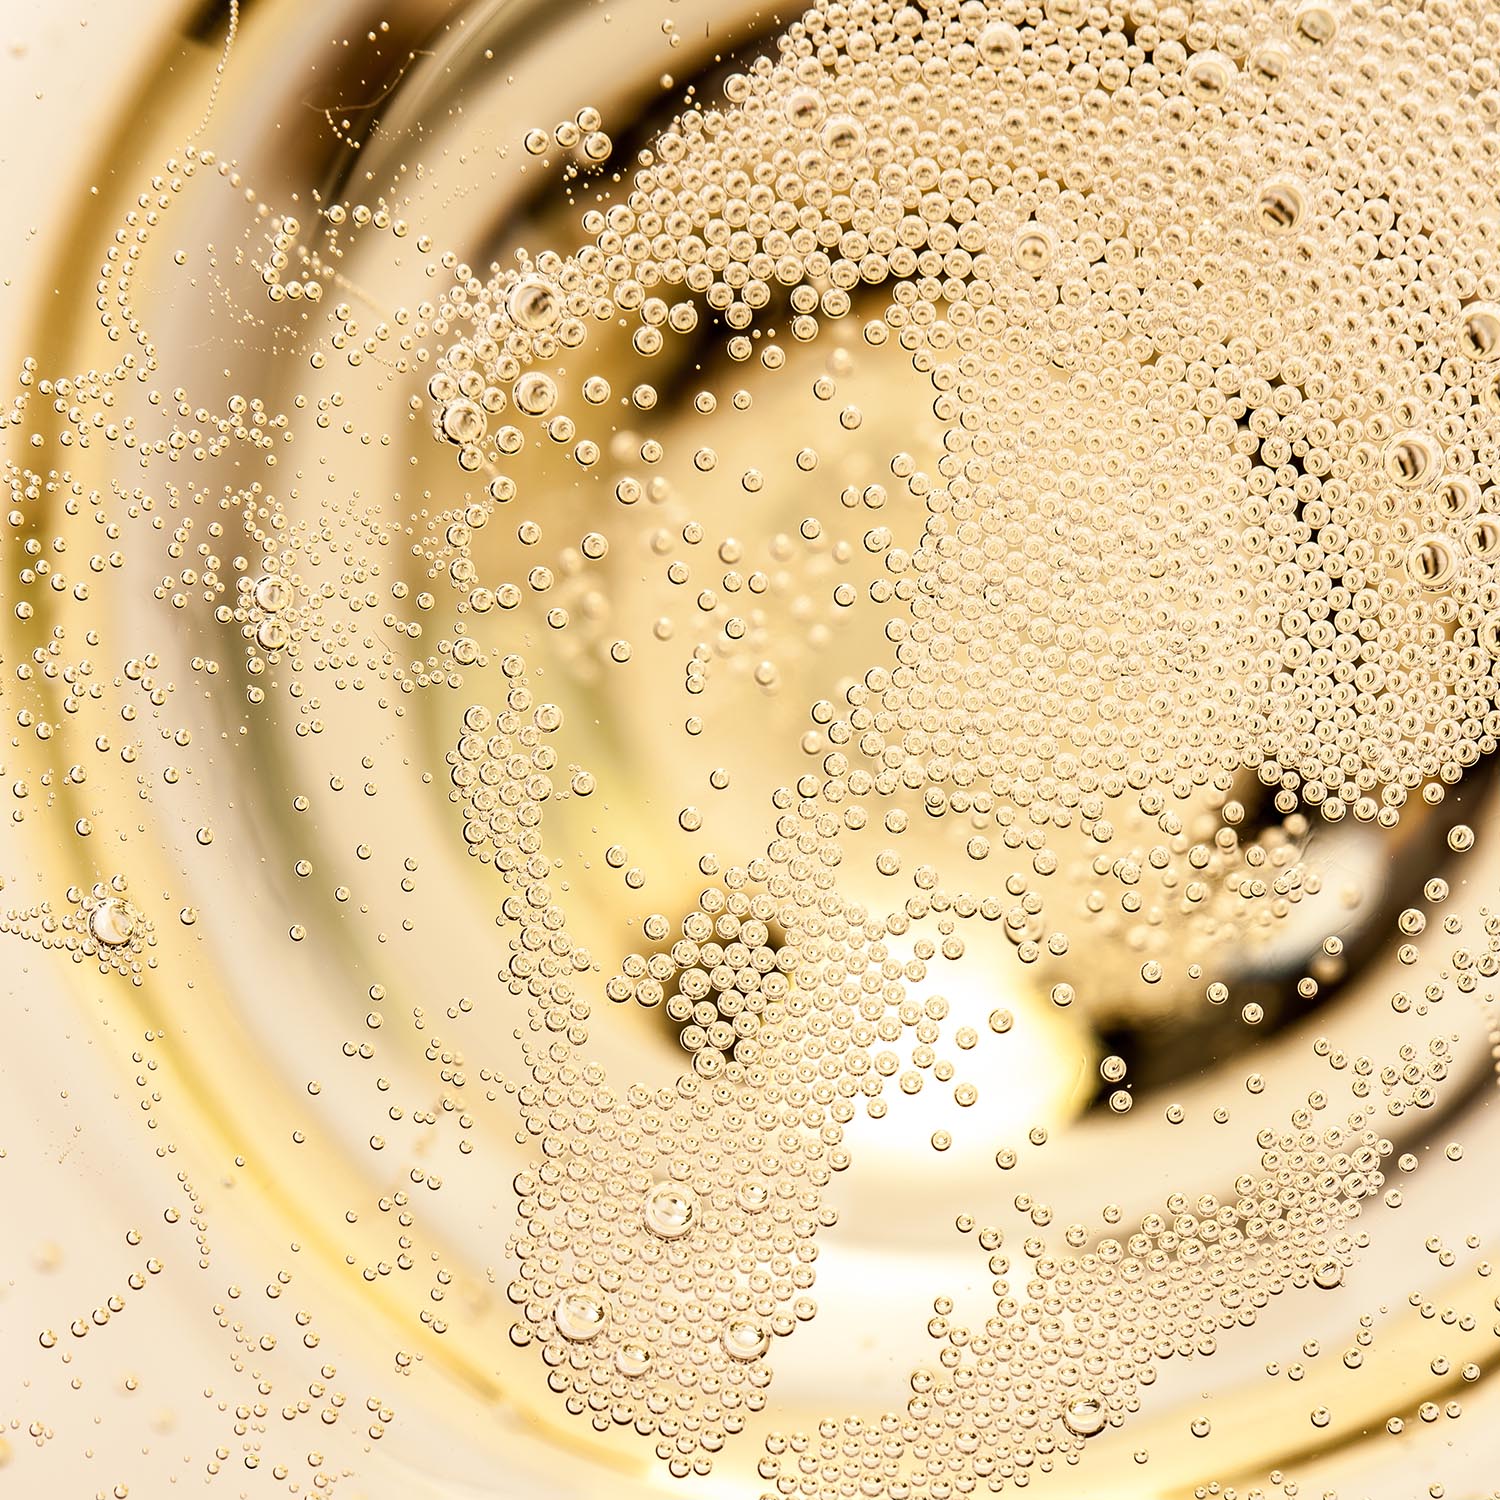 Vino Blanco - Lancers Semi Espumoso - 750 ml